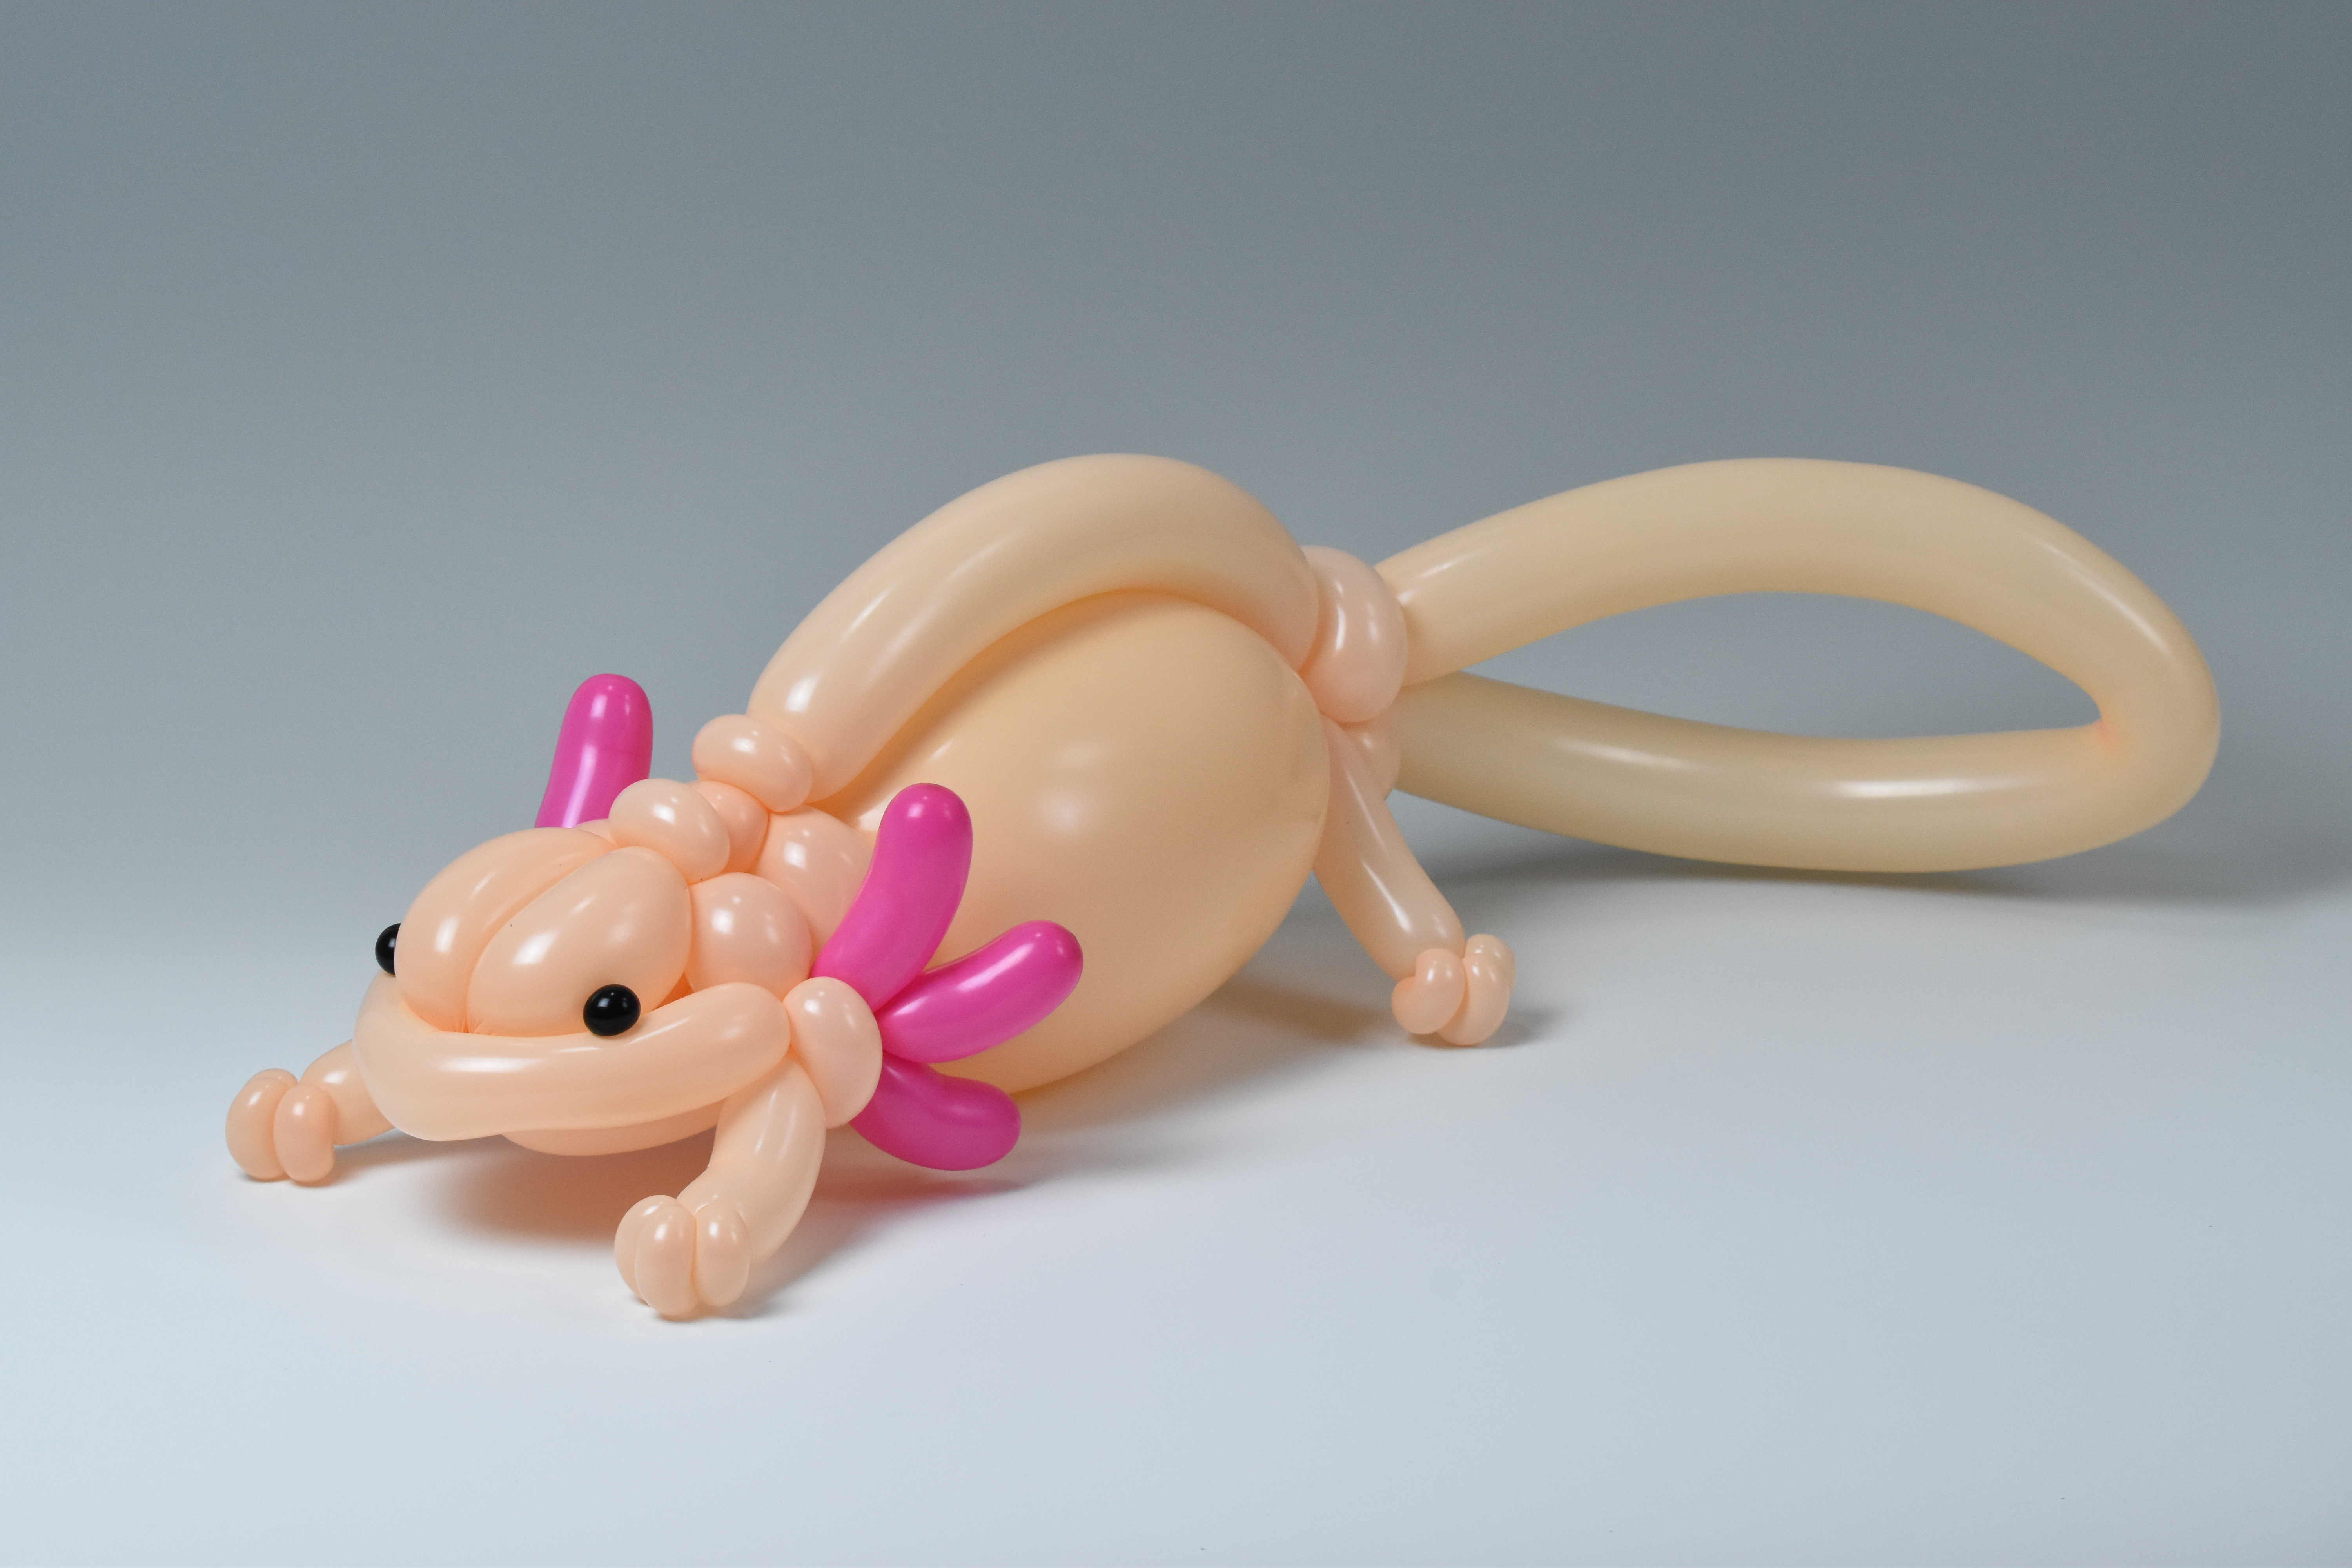 Axolotl - isopresso-balloon-animals | OpenSea